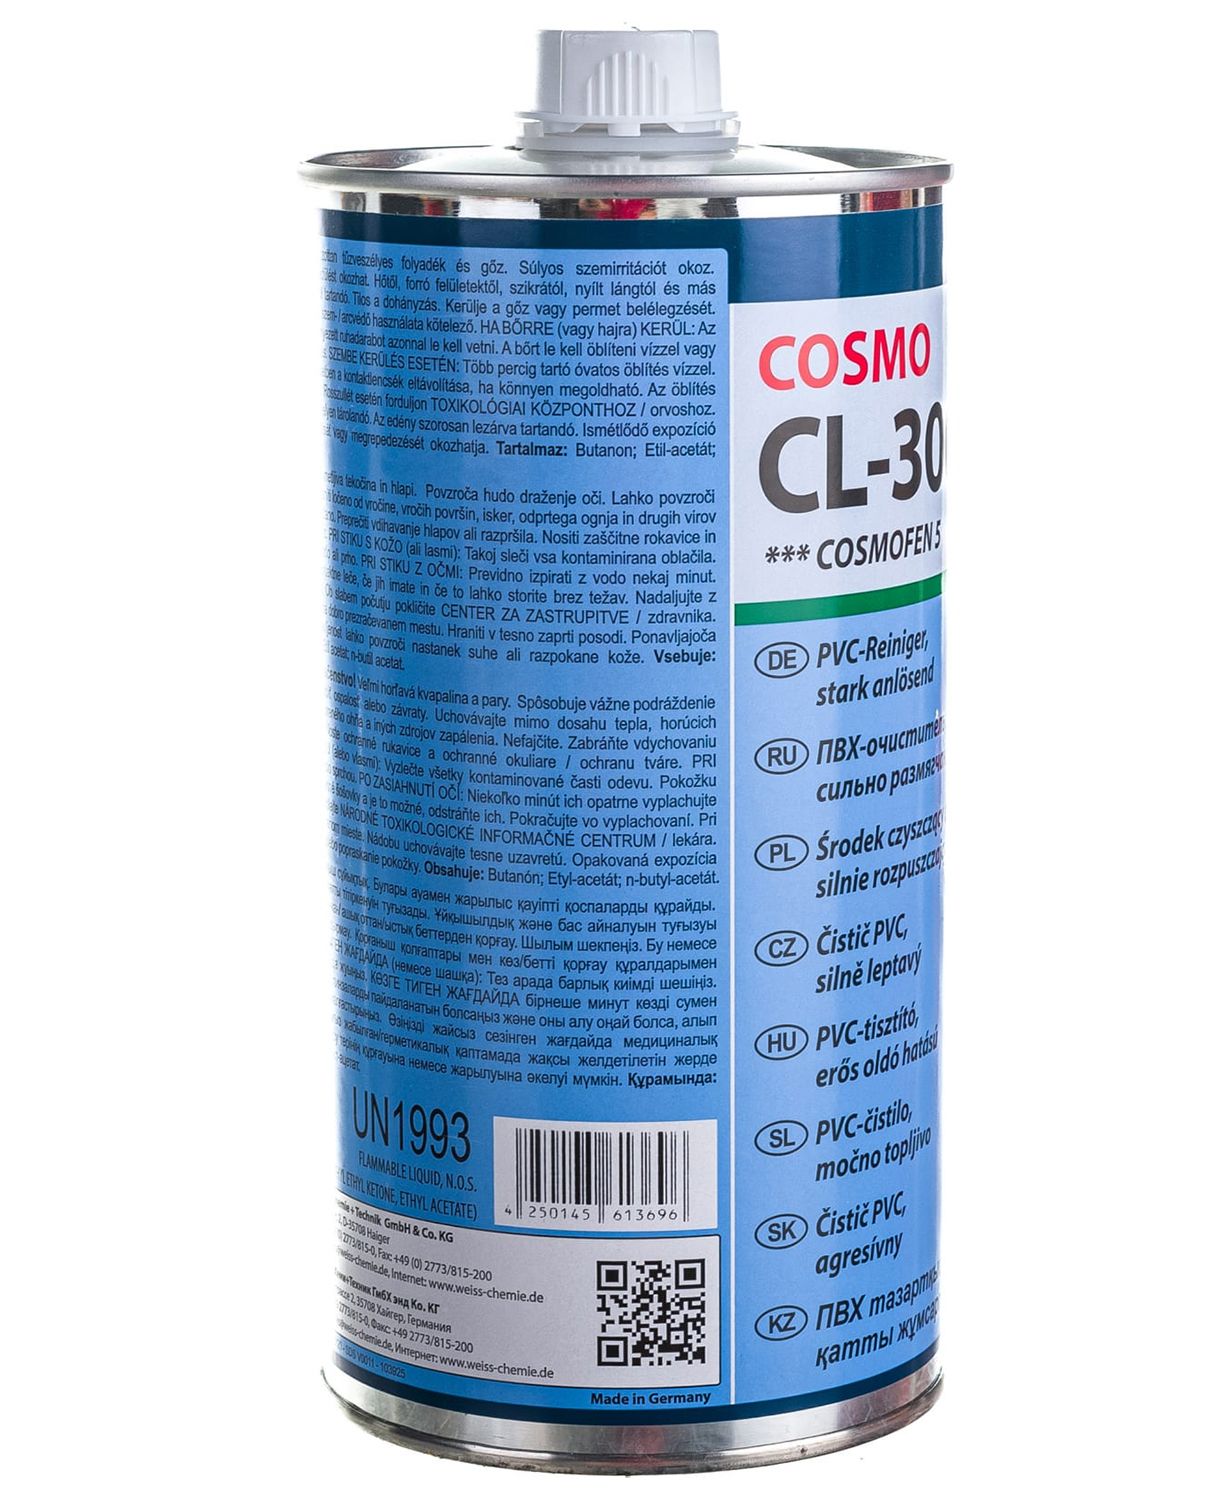 Космофен 5. Космофен CL-300.110. Очиститель для ПВХ "Cosmo CL 300.110". Cosmo CL-300.110. Cosmofen сильнорастворящий очиститель для ПВХ CL-300.110.